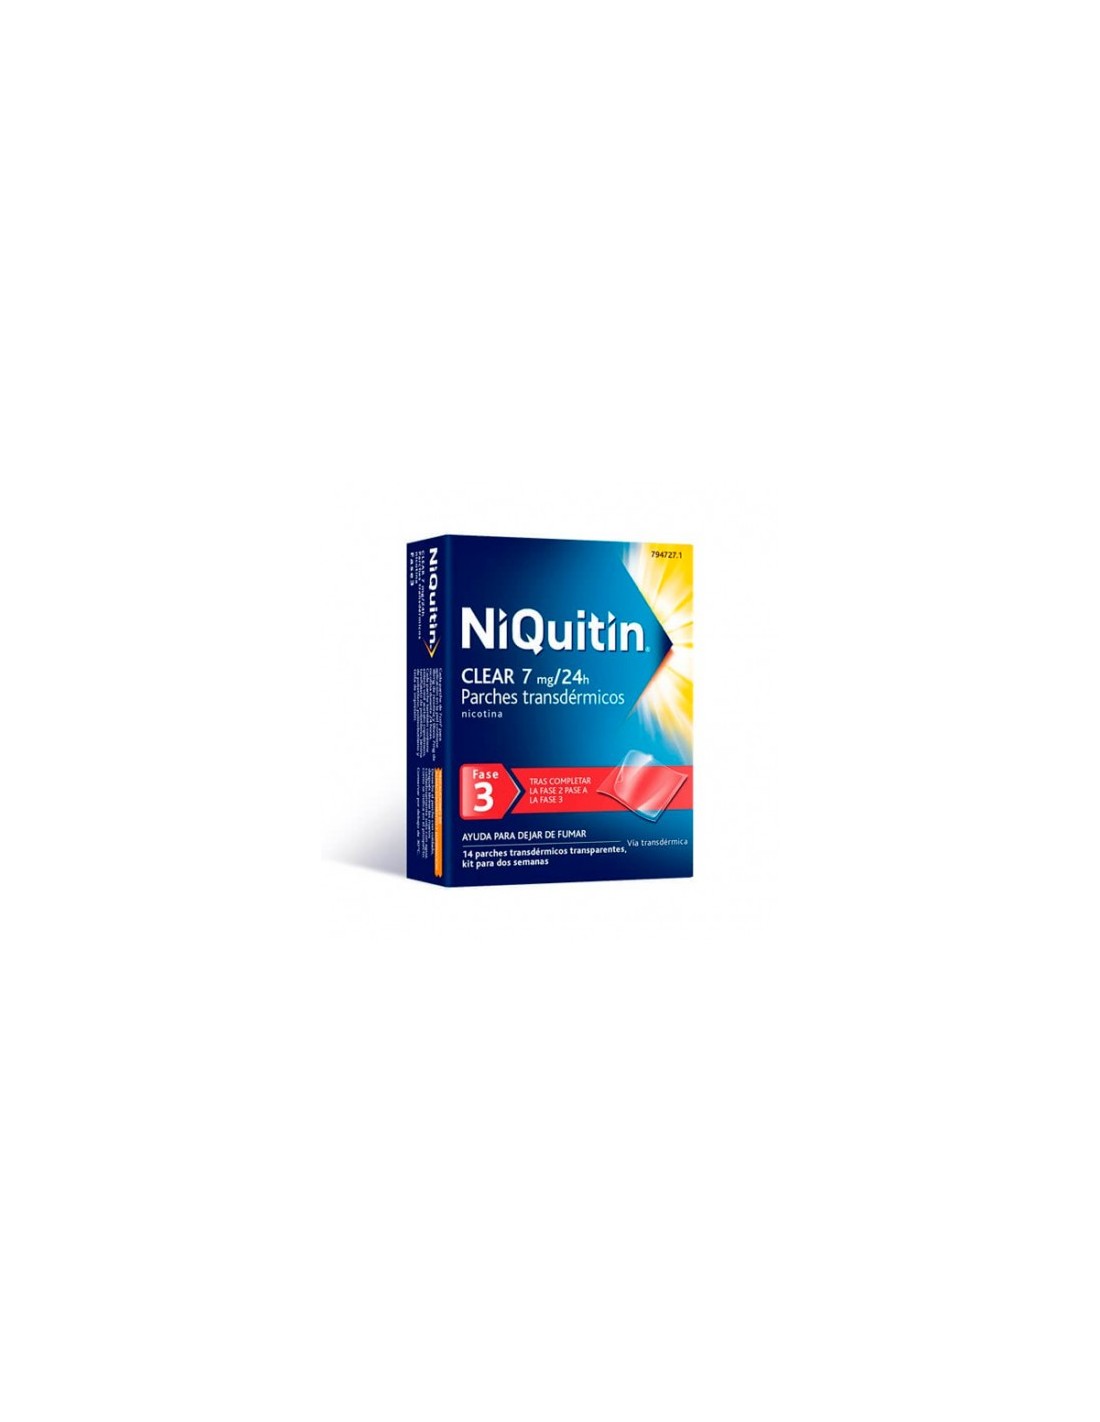 Niquitin Clear 7 mg/24h 14 Parches Transdermicos